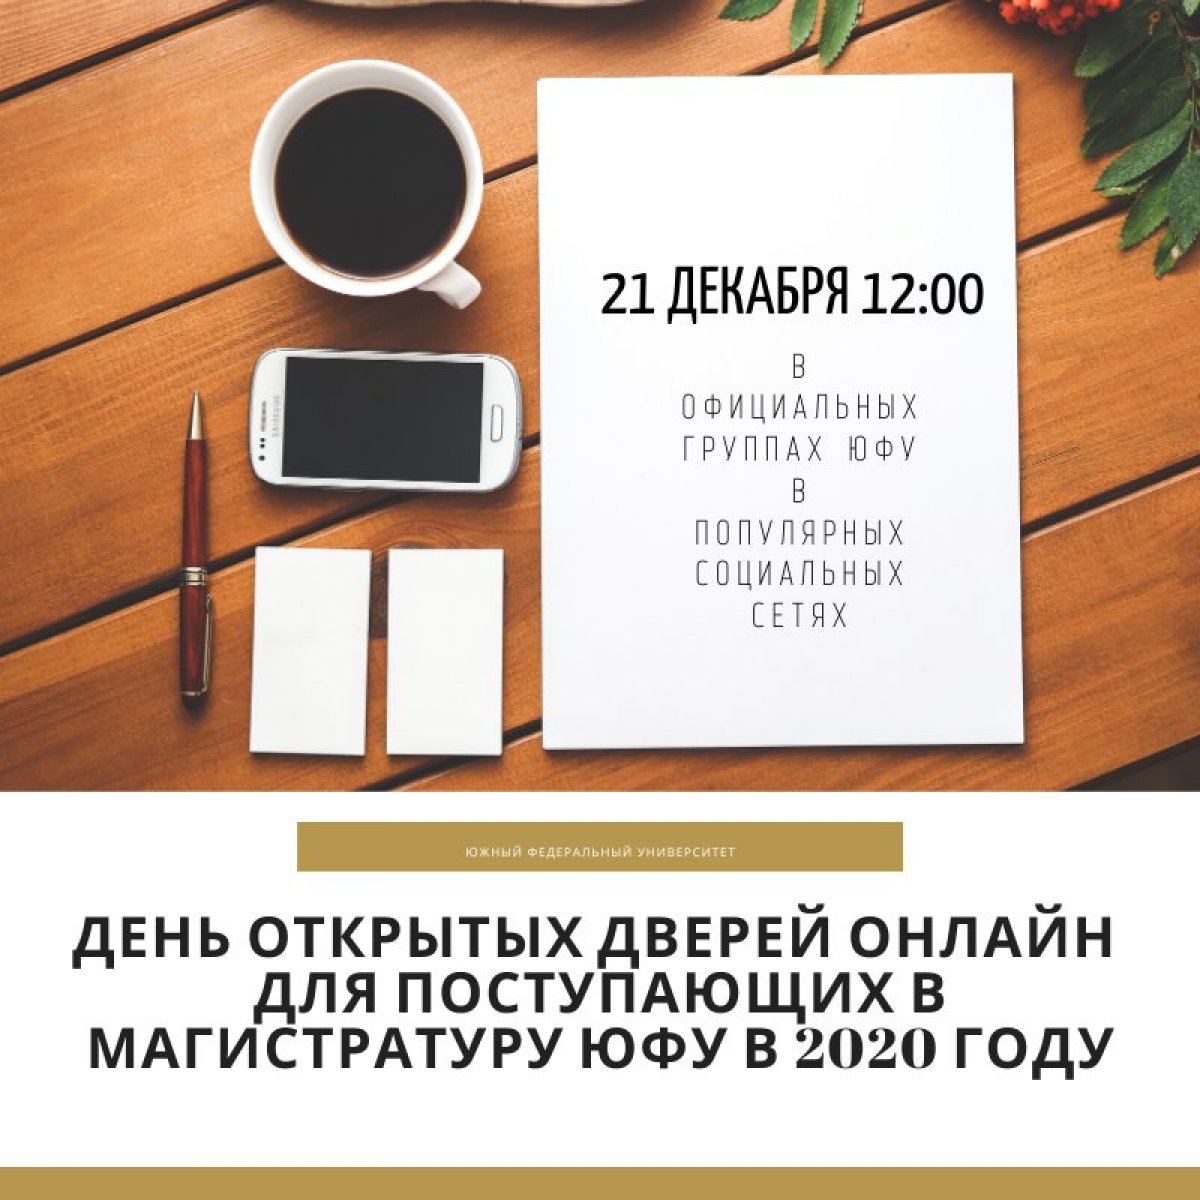 Записаться на день открытых дверей можно уже сейчас sfedu.ru/news/61892